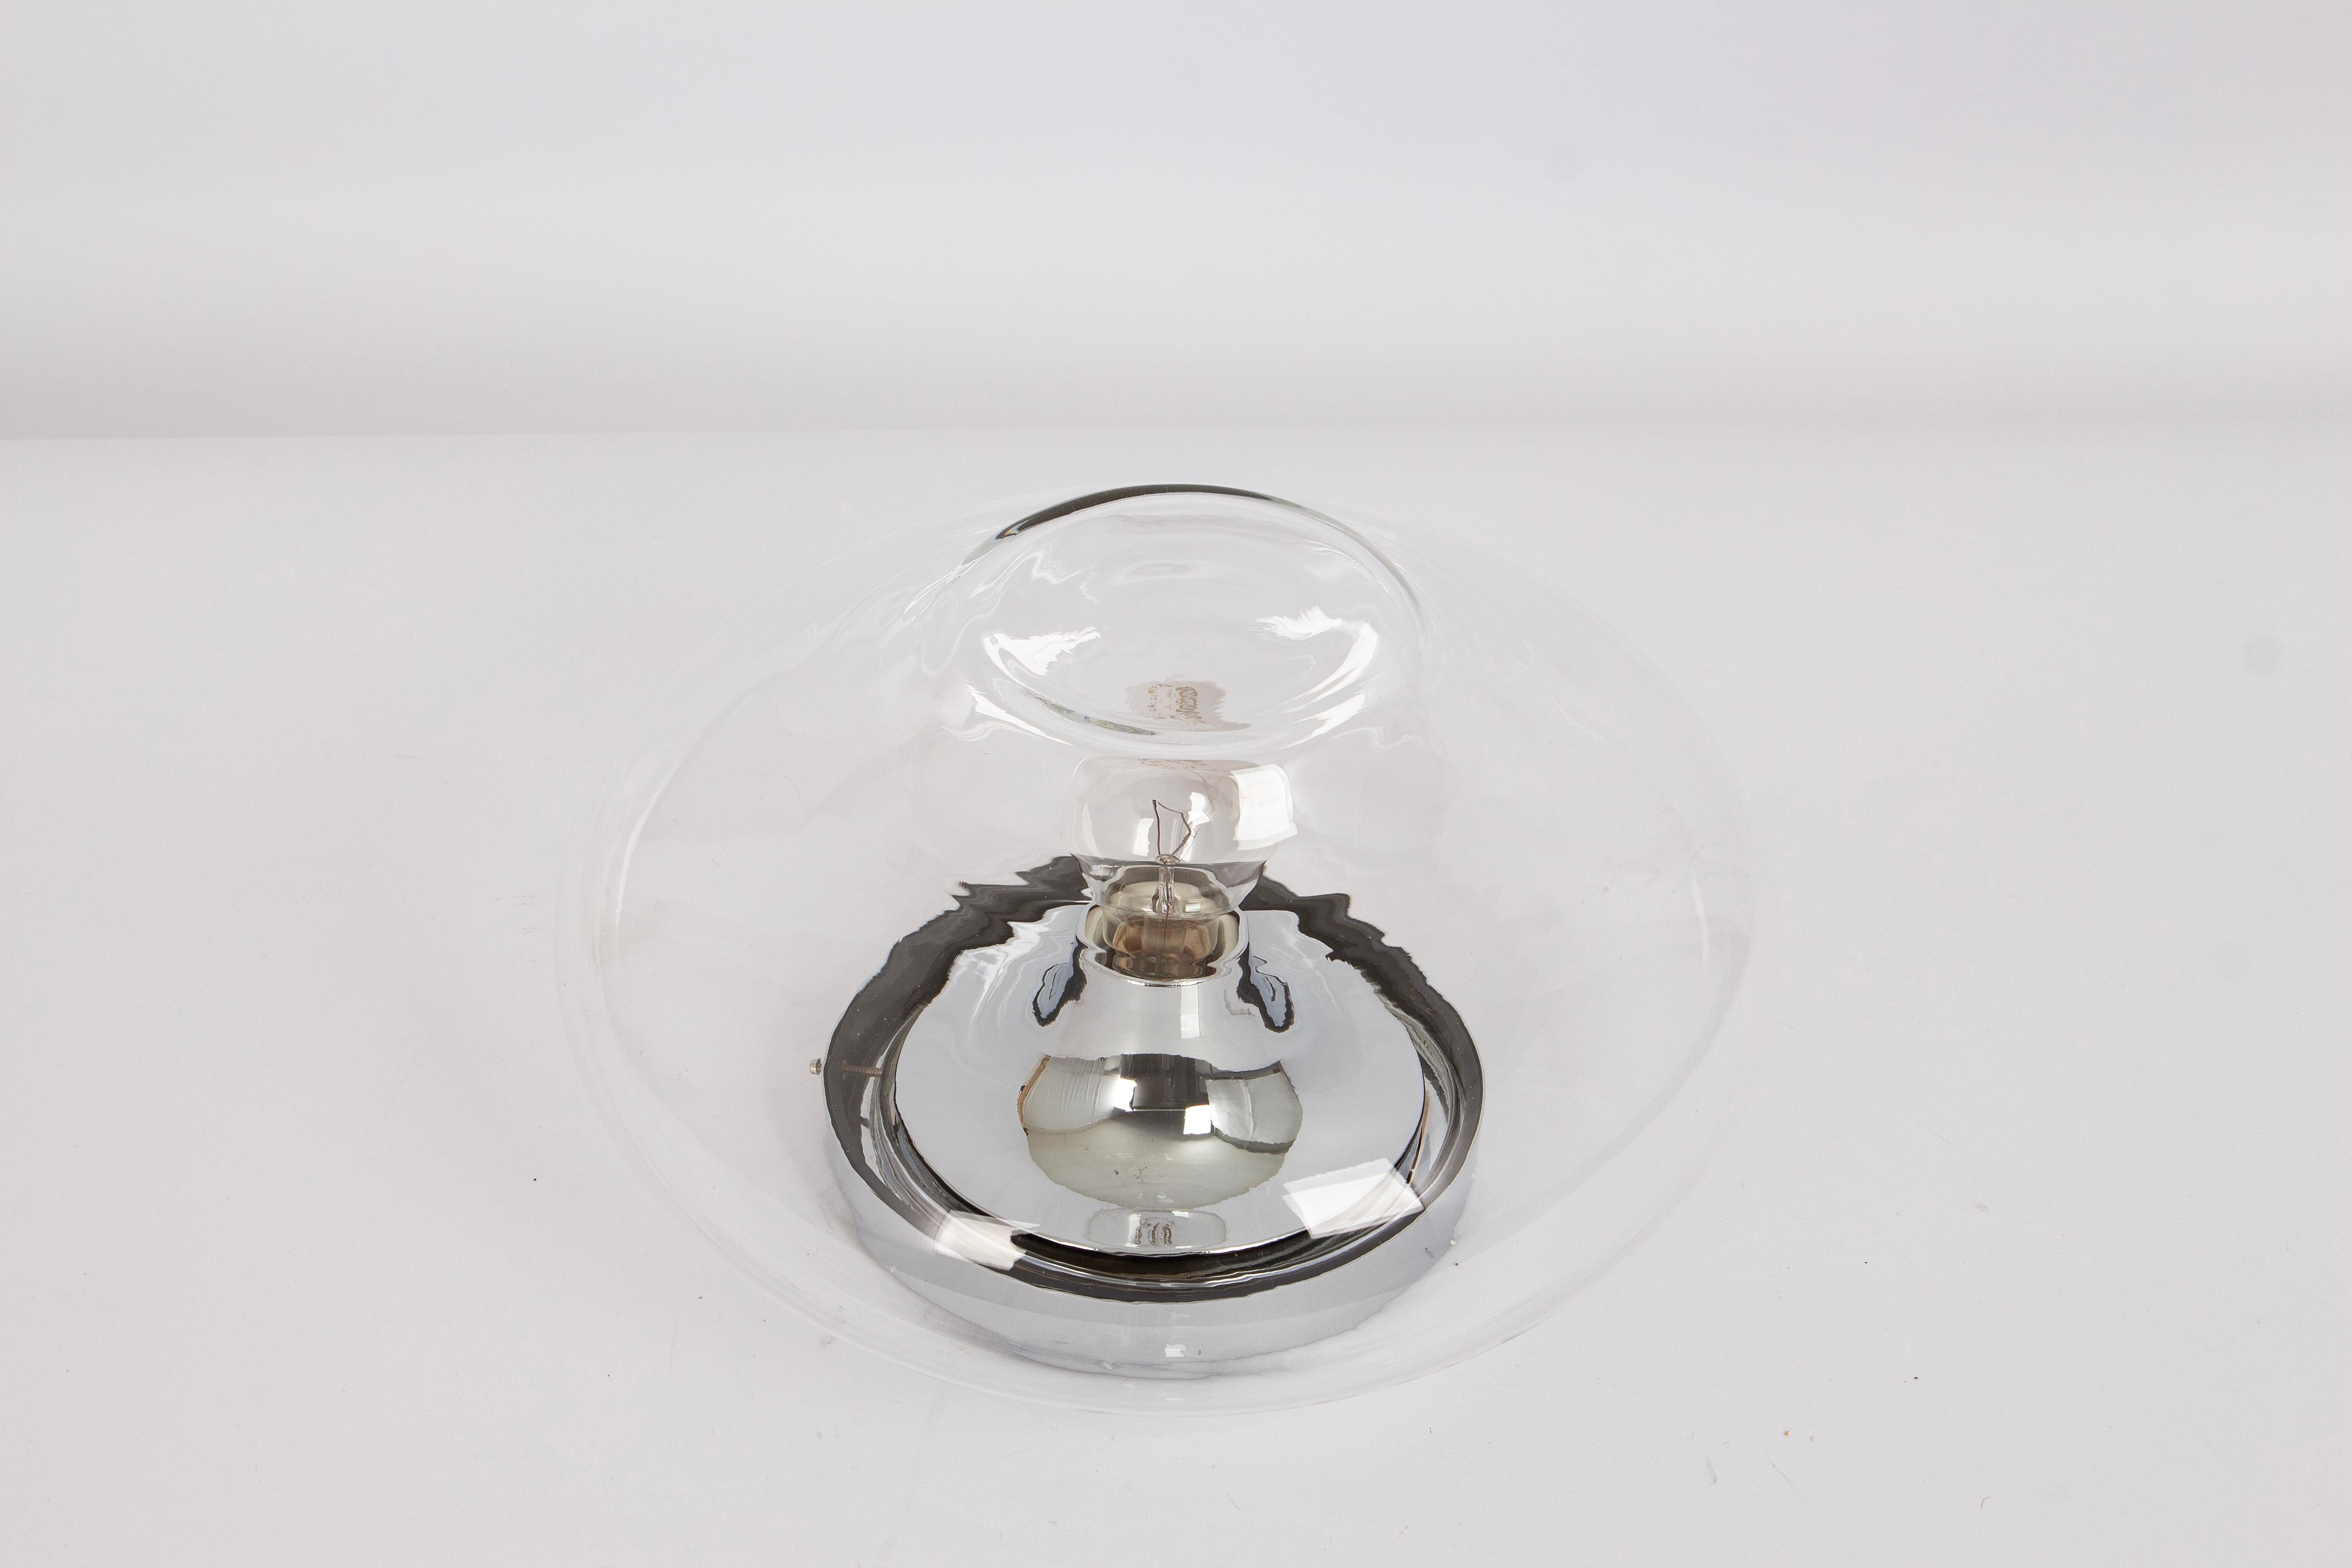 Vintage Sputnik Lampen aus den 1970er Jahren hergestellt von Cosack, Deutschland, 1970er Jahre.
Diese Lampe kann sowohl als Deckenlampe als auch als Wandlampe verwendet werden.
Wunderschöne Glasform und Lichteffekt.
Fassungen: 1 x E27 Standard